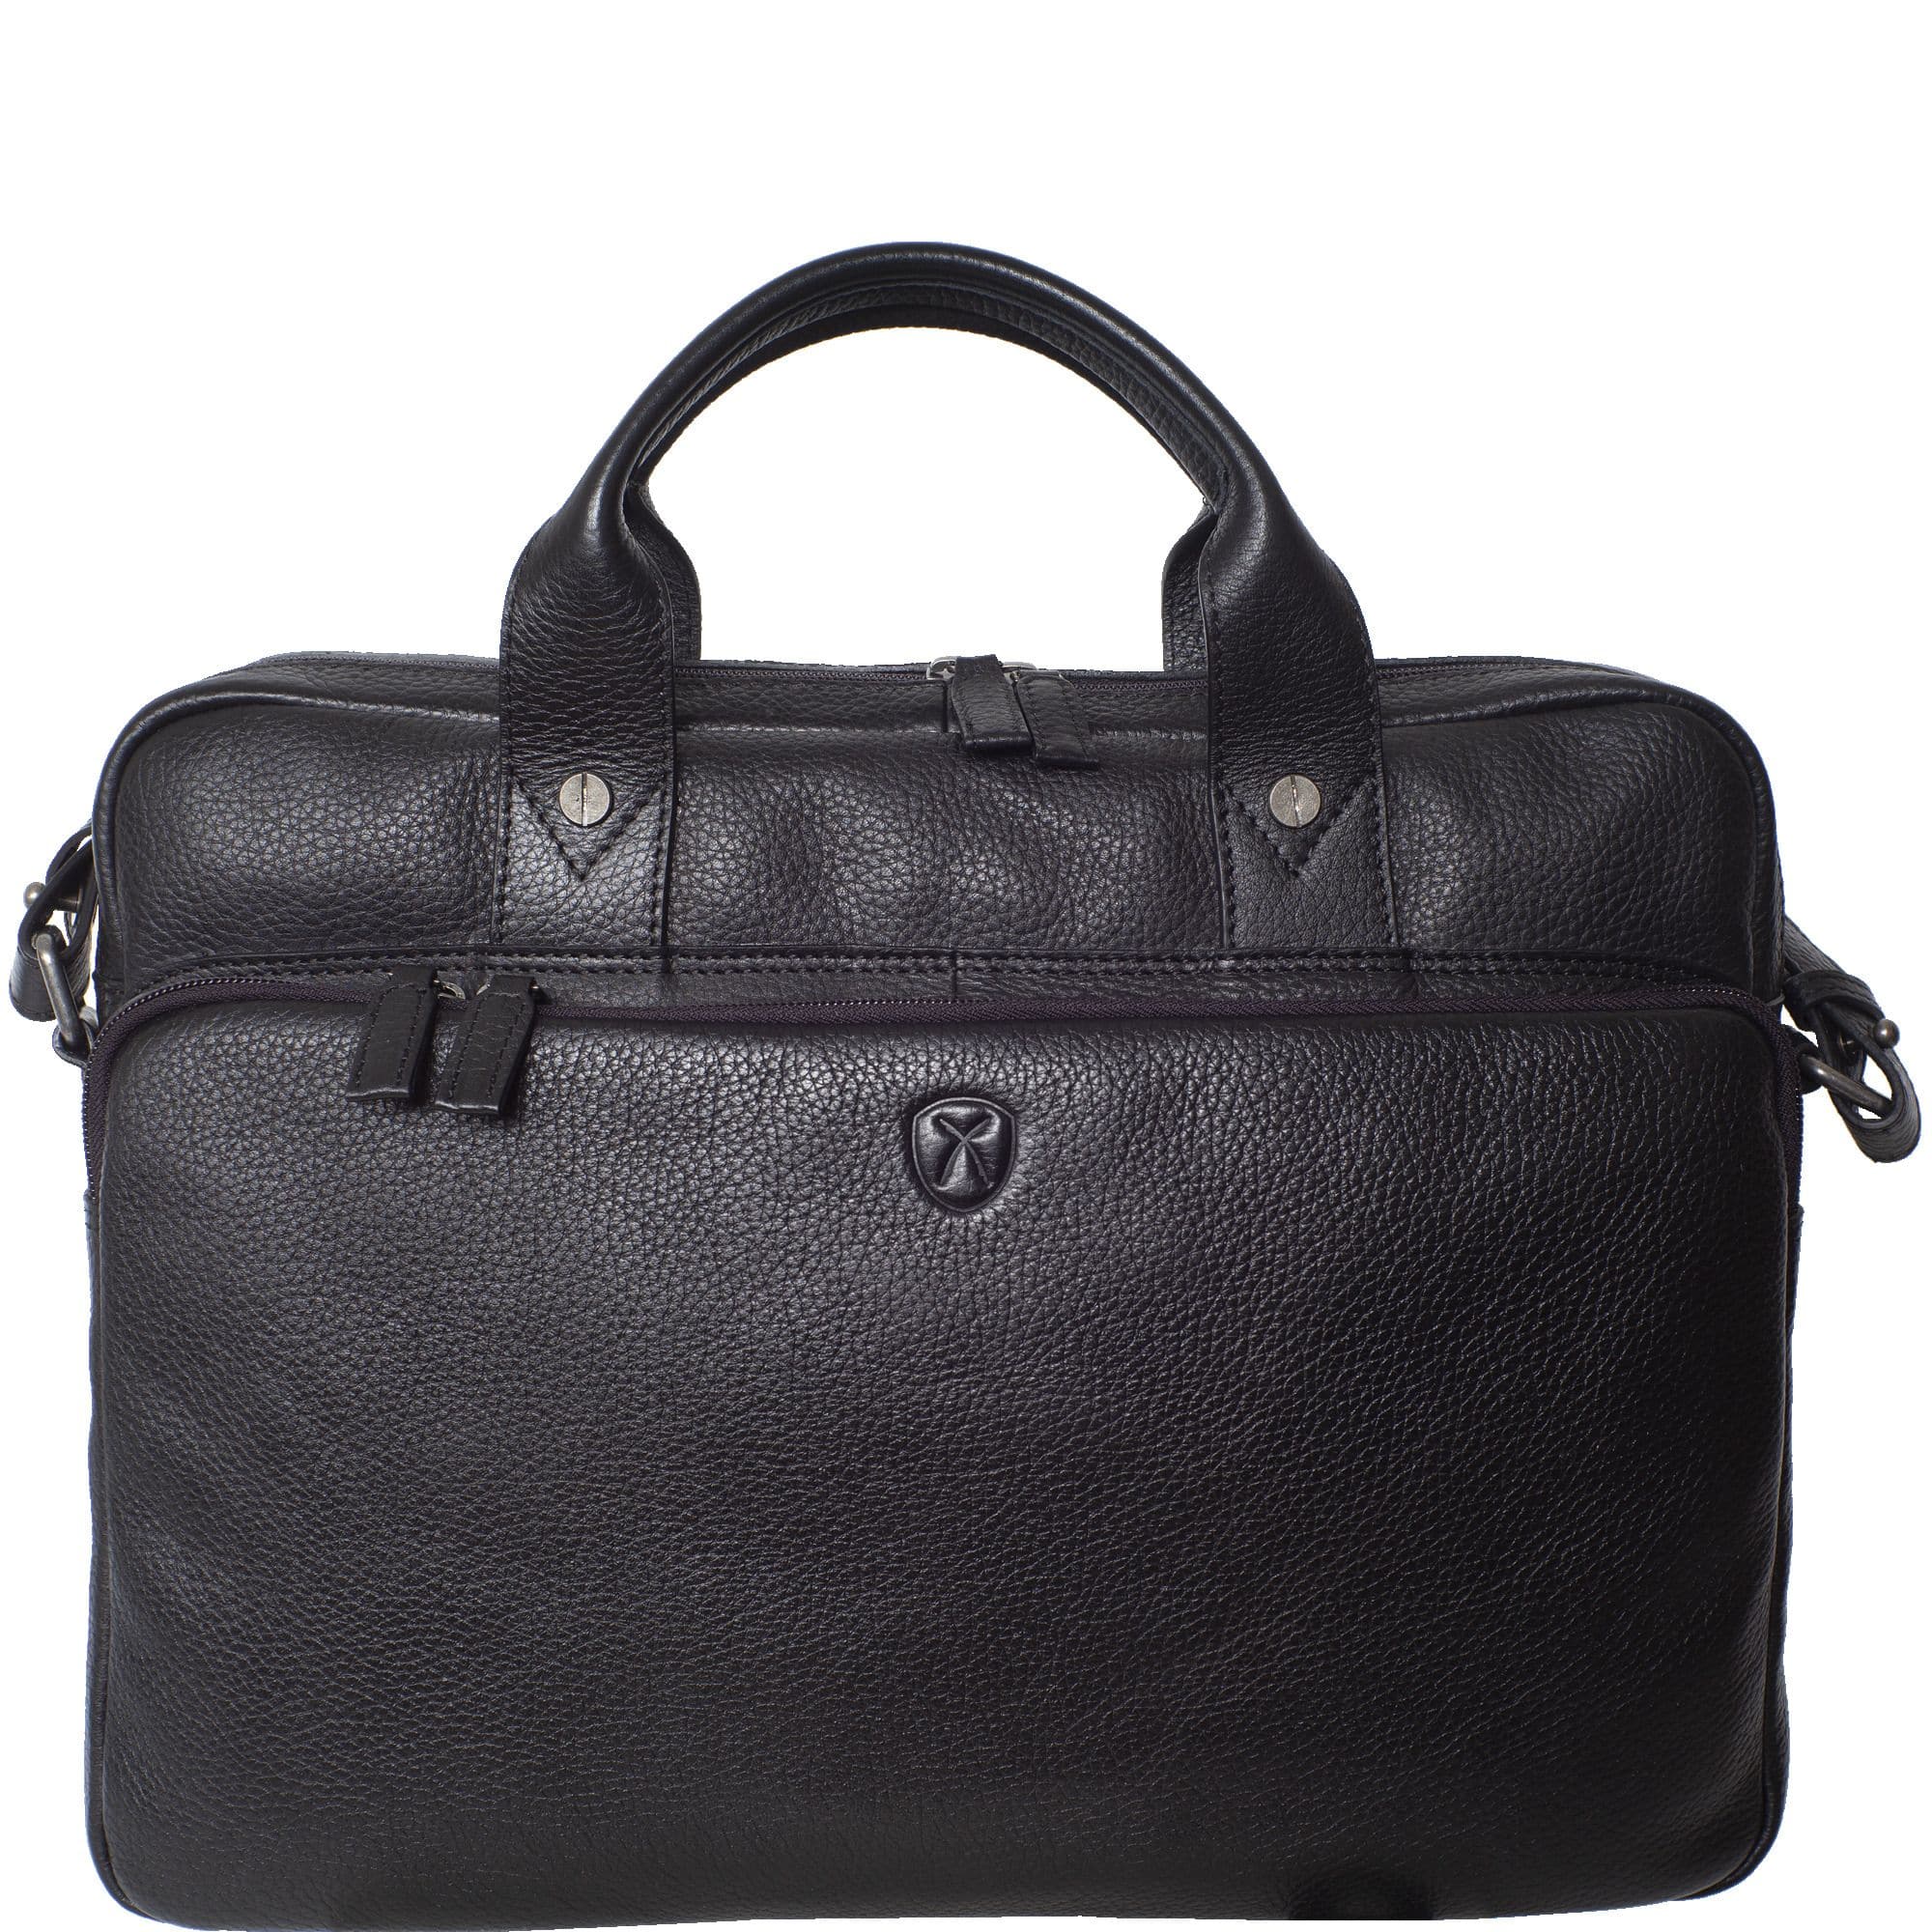 Businesstasche Laptoptasche 15 Zoll geprägtes Leder schwarz Vortasche mit Boden